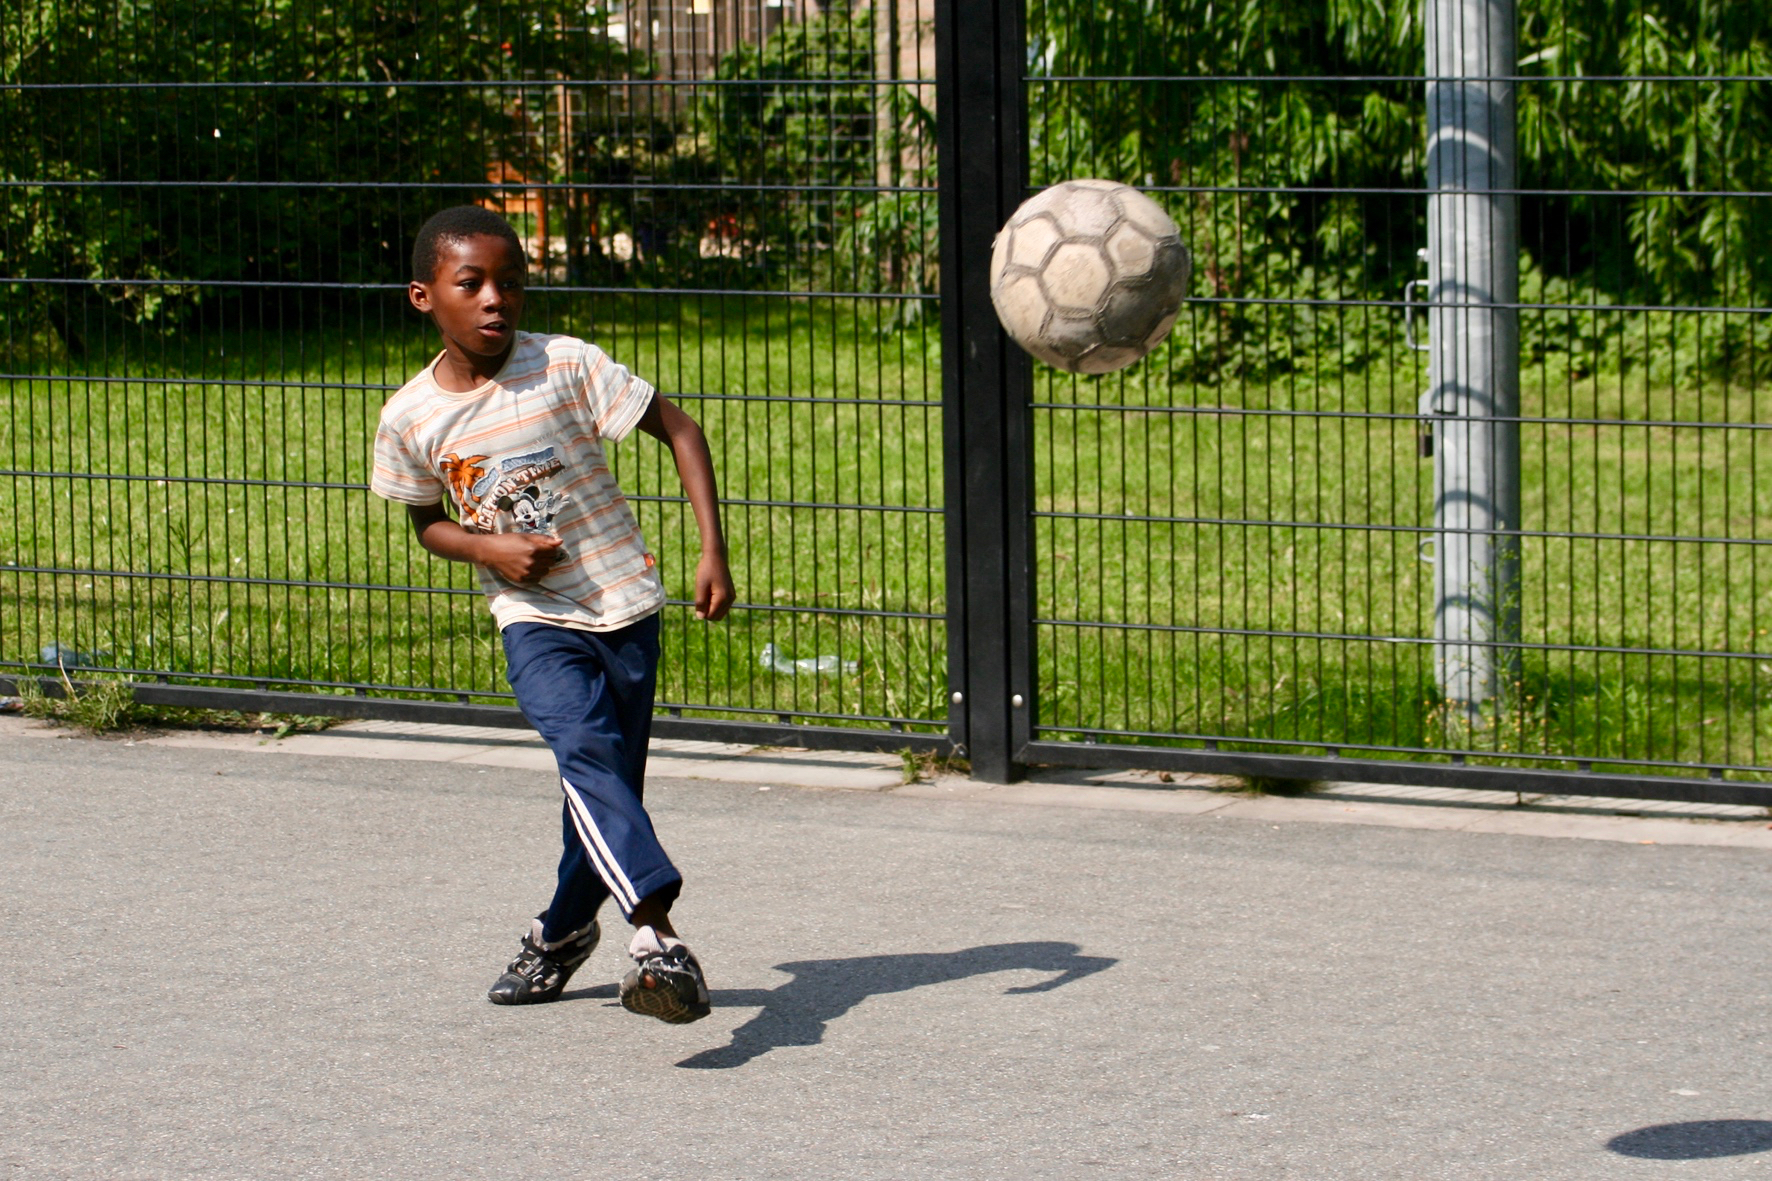 Afbeelding bij Start onderzoek ‘Kan ik meedoen?’ Sport en bewegen voor iedere jongere.’